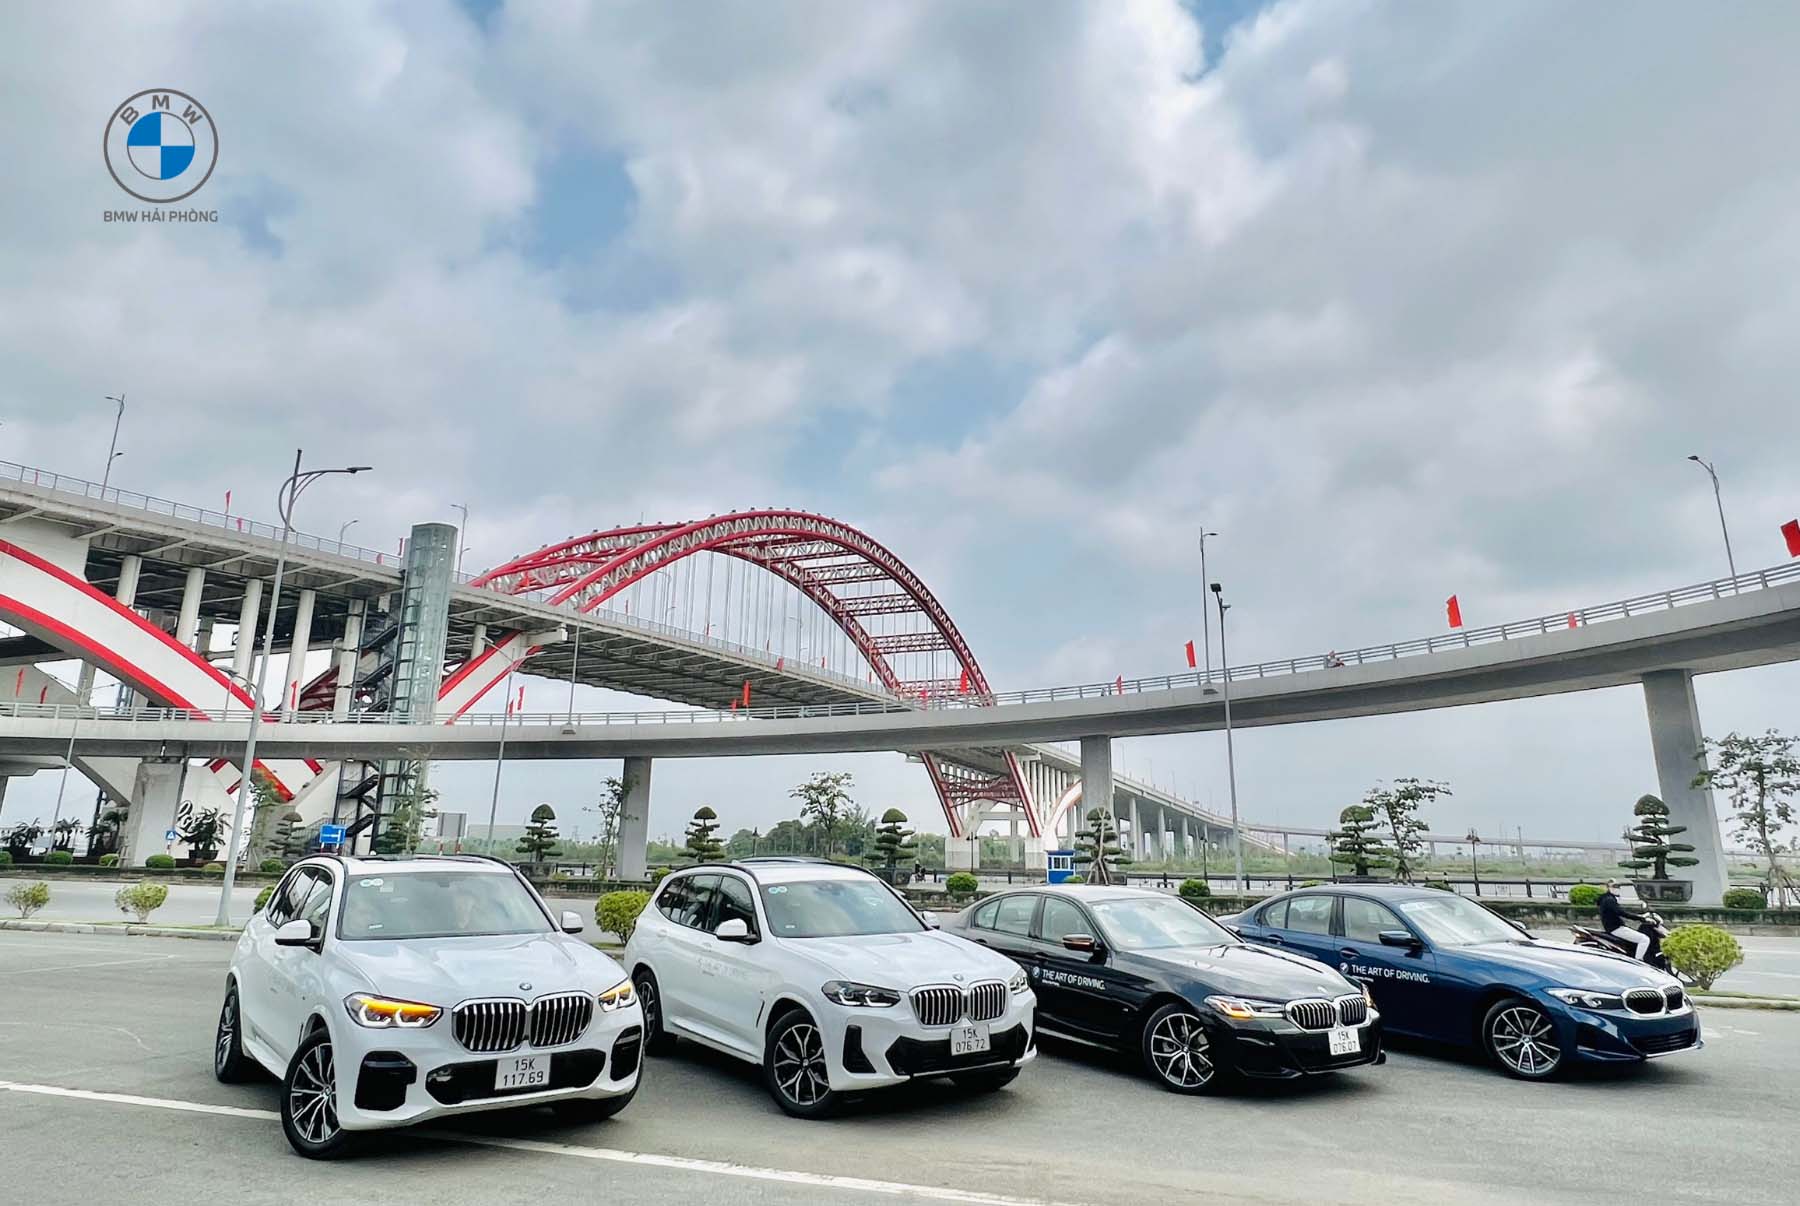 BMW HAI PHONG Roadshow 20 05 (4)